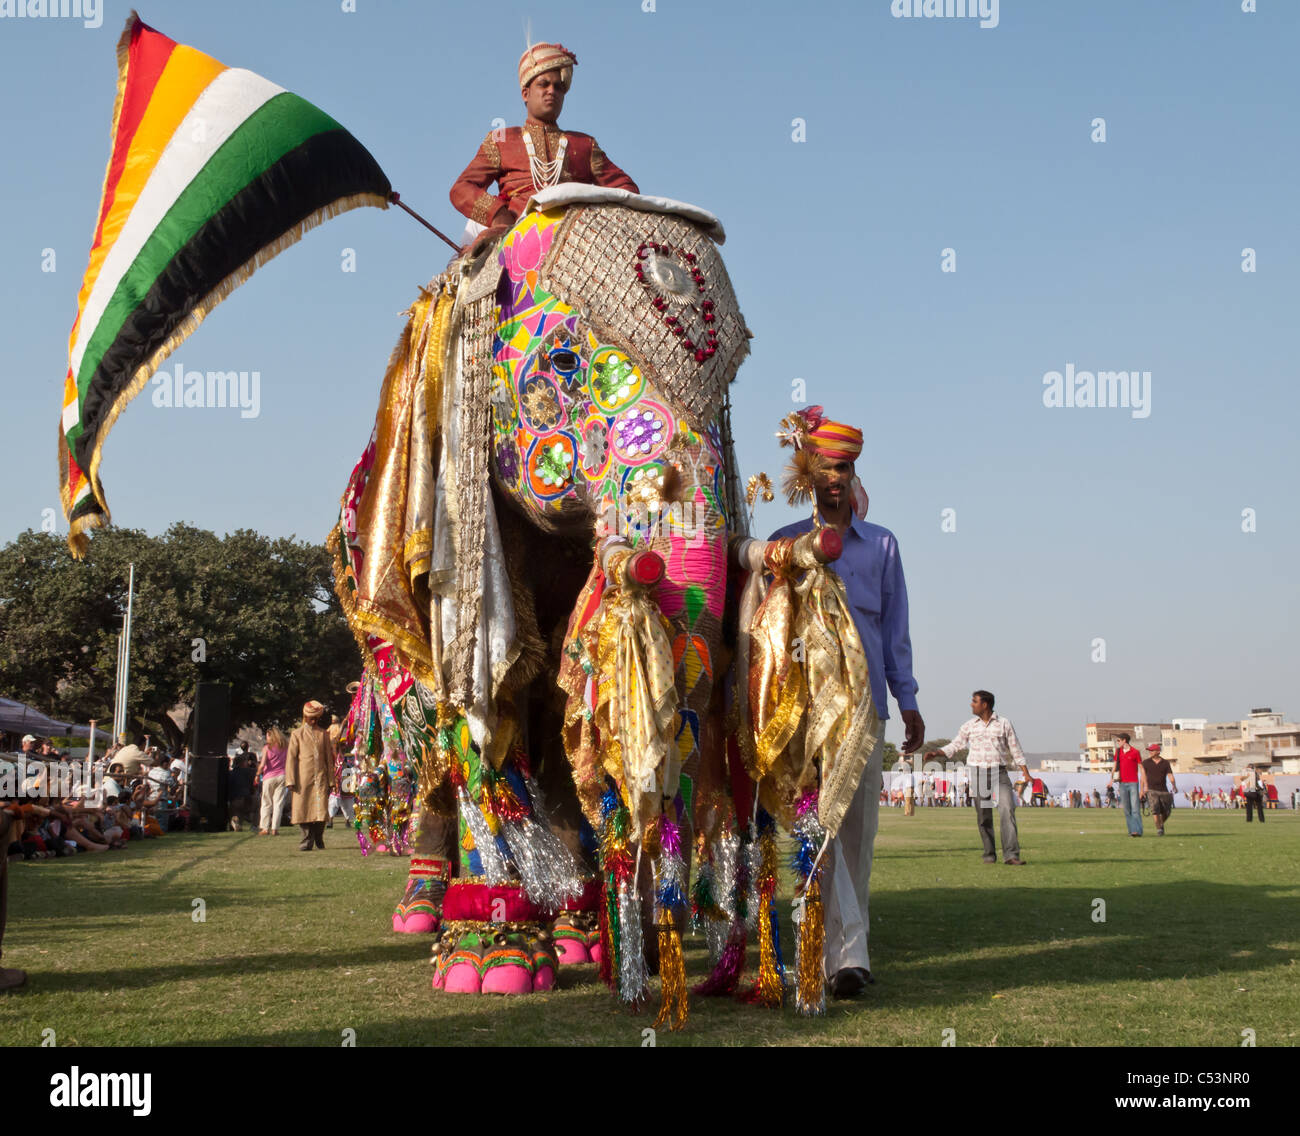 Verniciato colorato elefanti e gli artisti interpreti o esecutori parade per l'annuale festival di elefante su Marzo 10, 2009 a Jaipur, India Foto Stock